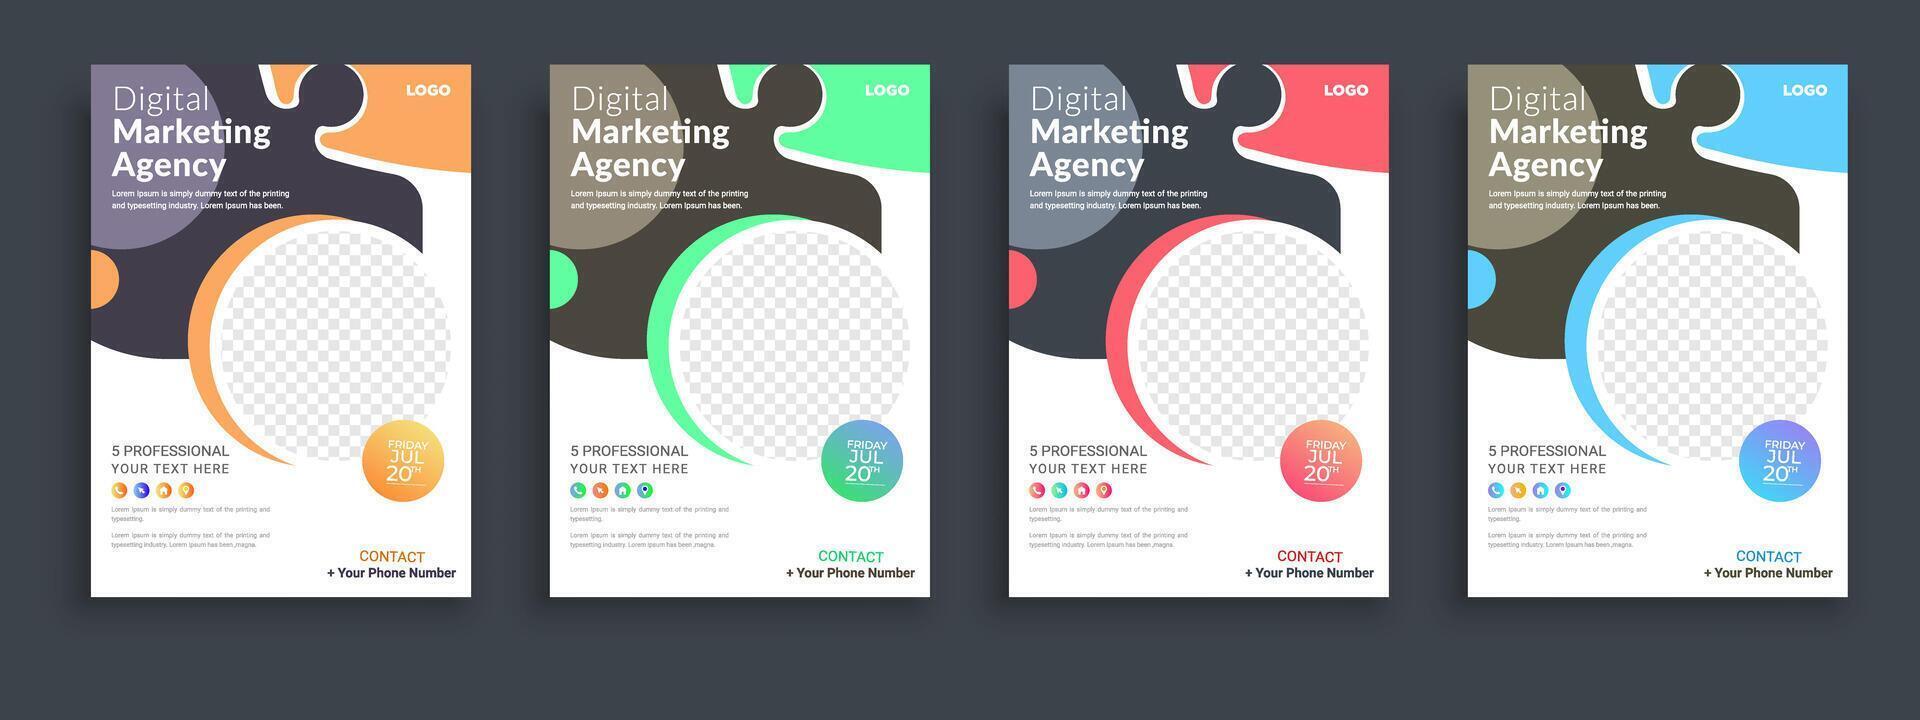 digital márketing póster volantes folleto folleto cubrir diseño diseño espacio para foto fondo, vector ilustración modelo en a4 Talla